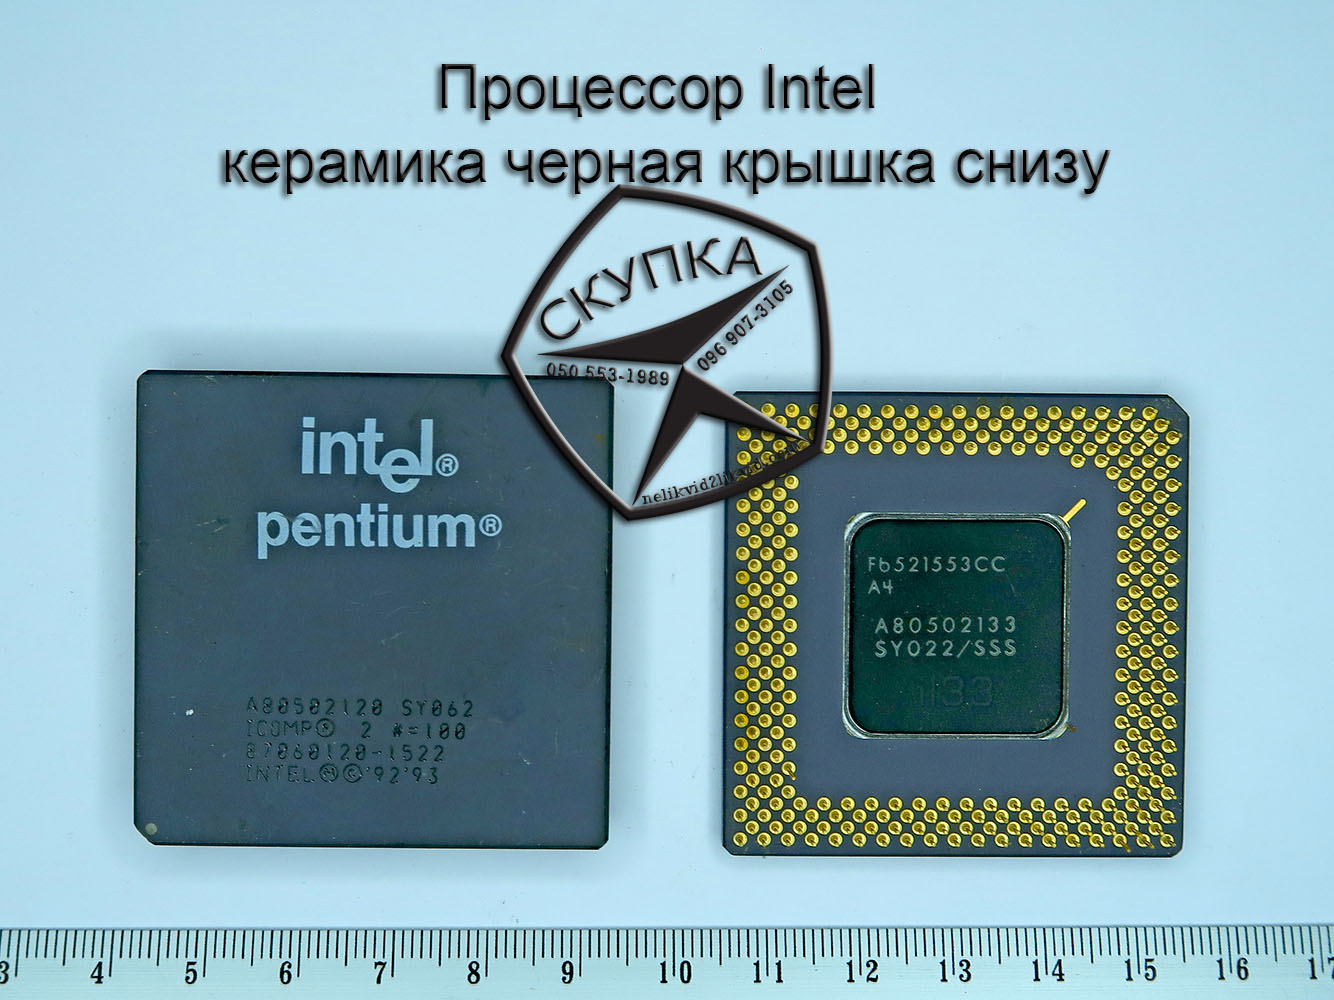 Интел 14 поколения. Крышка процессора Интел. Процессор Интел м с 06. Intel Ceramics.